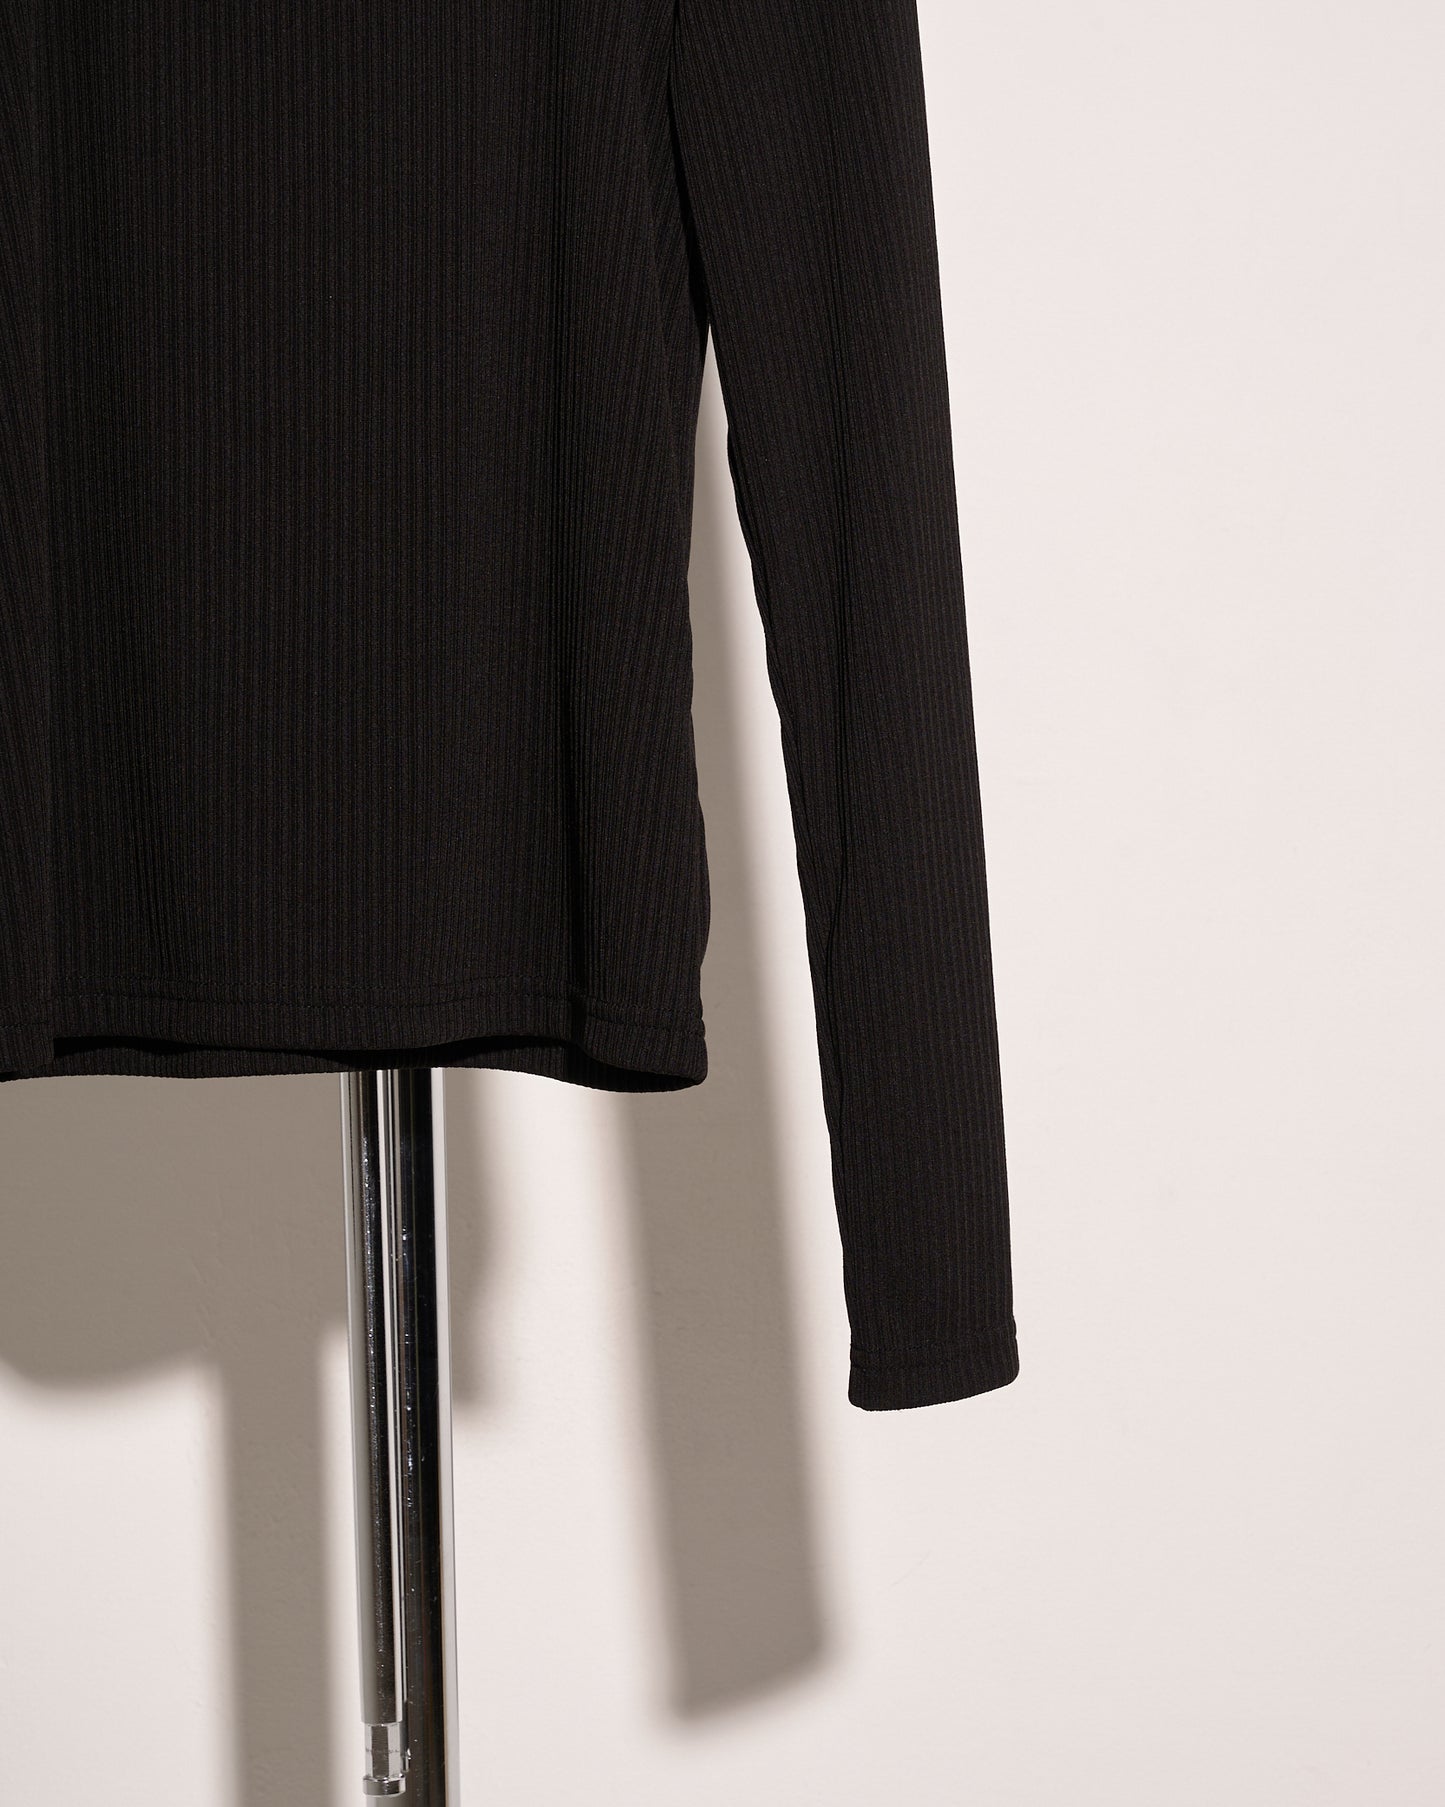 aalis DINAH multi straps detail knit top (Black)